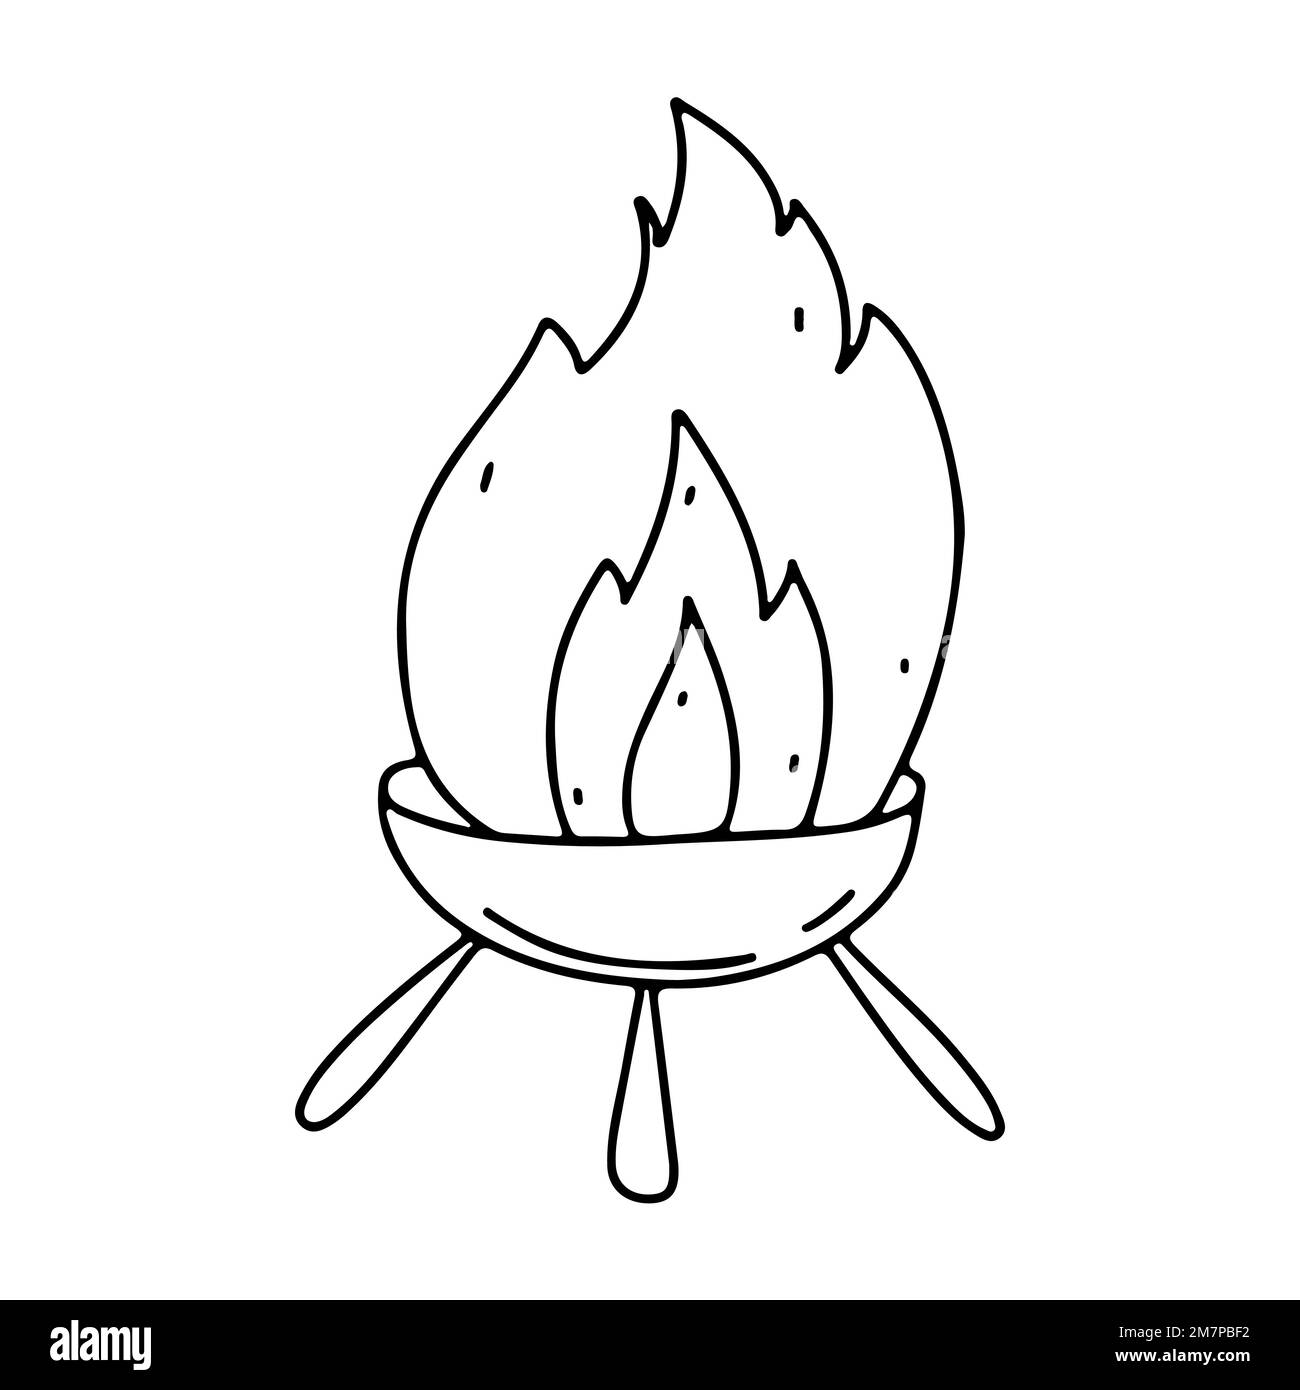 Appareil de chauffage pour barbecue pour encas de steak isolé sur fond blanc dans le style de l'oodle dessiné à la main Illustration de Vecteur